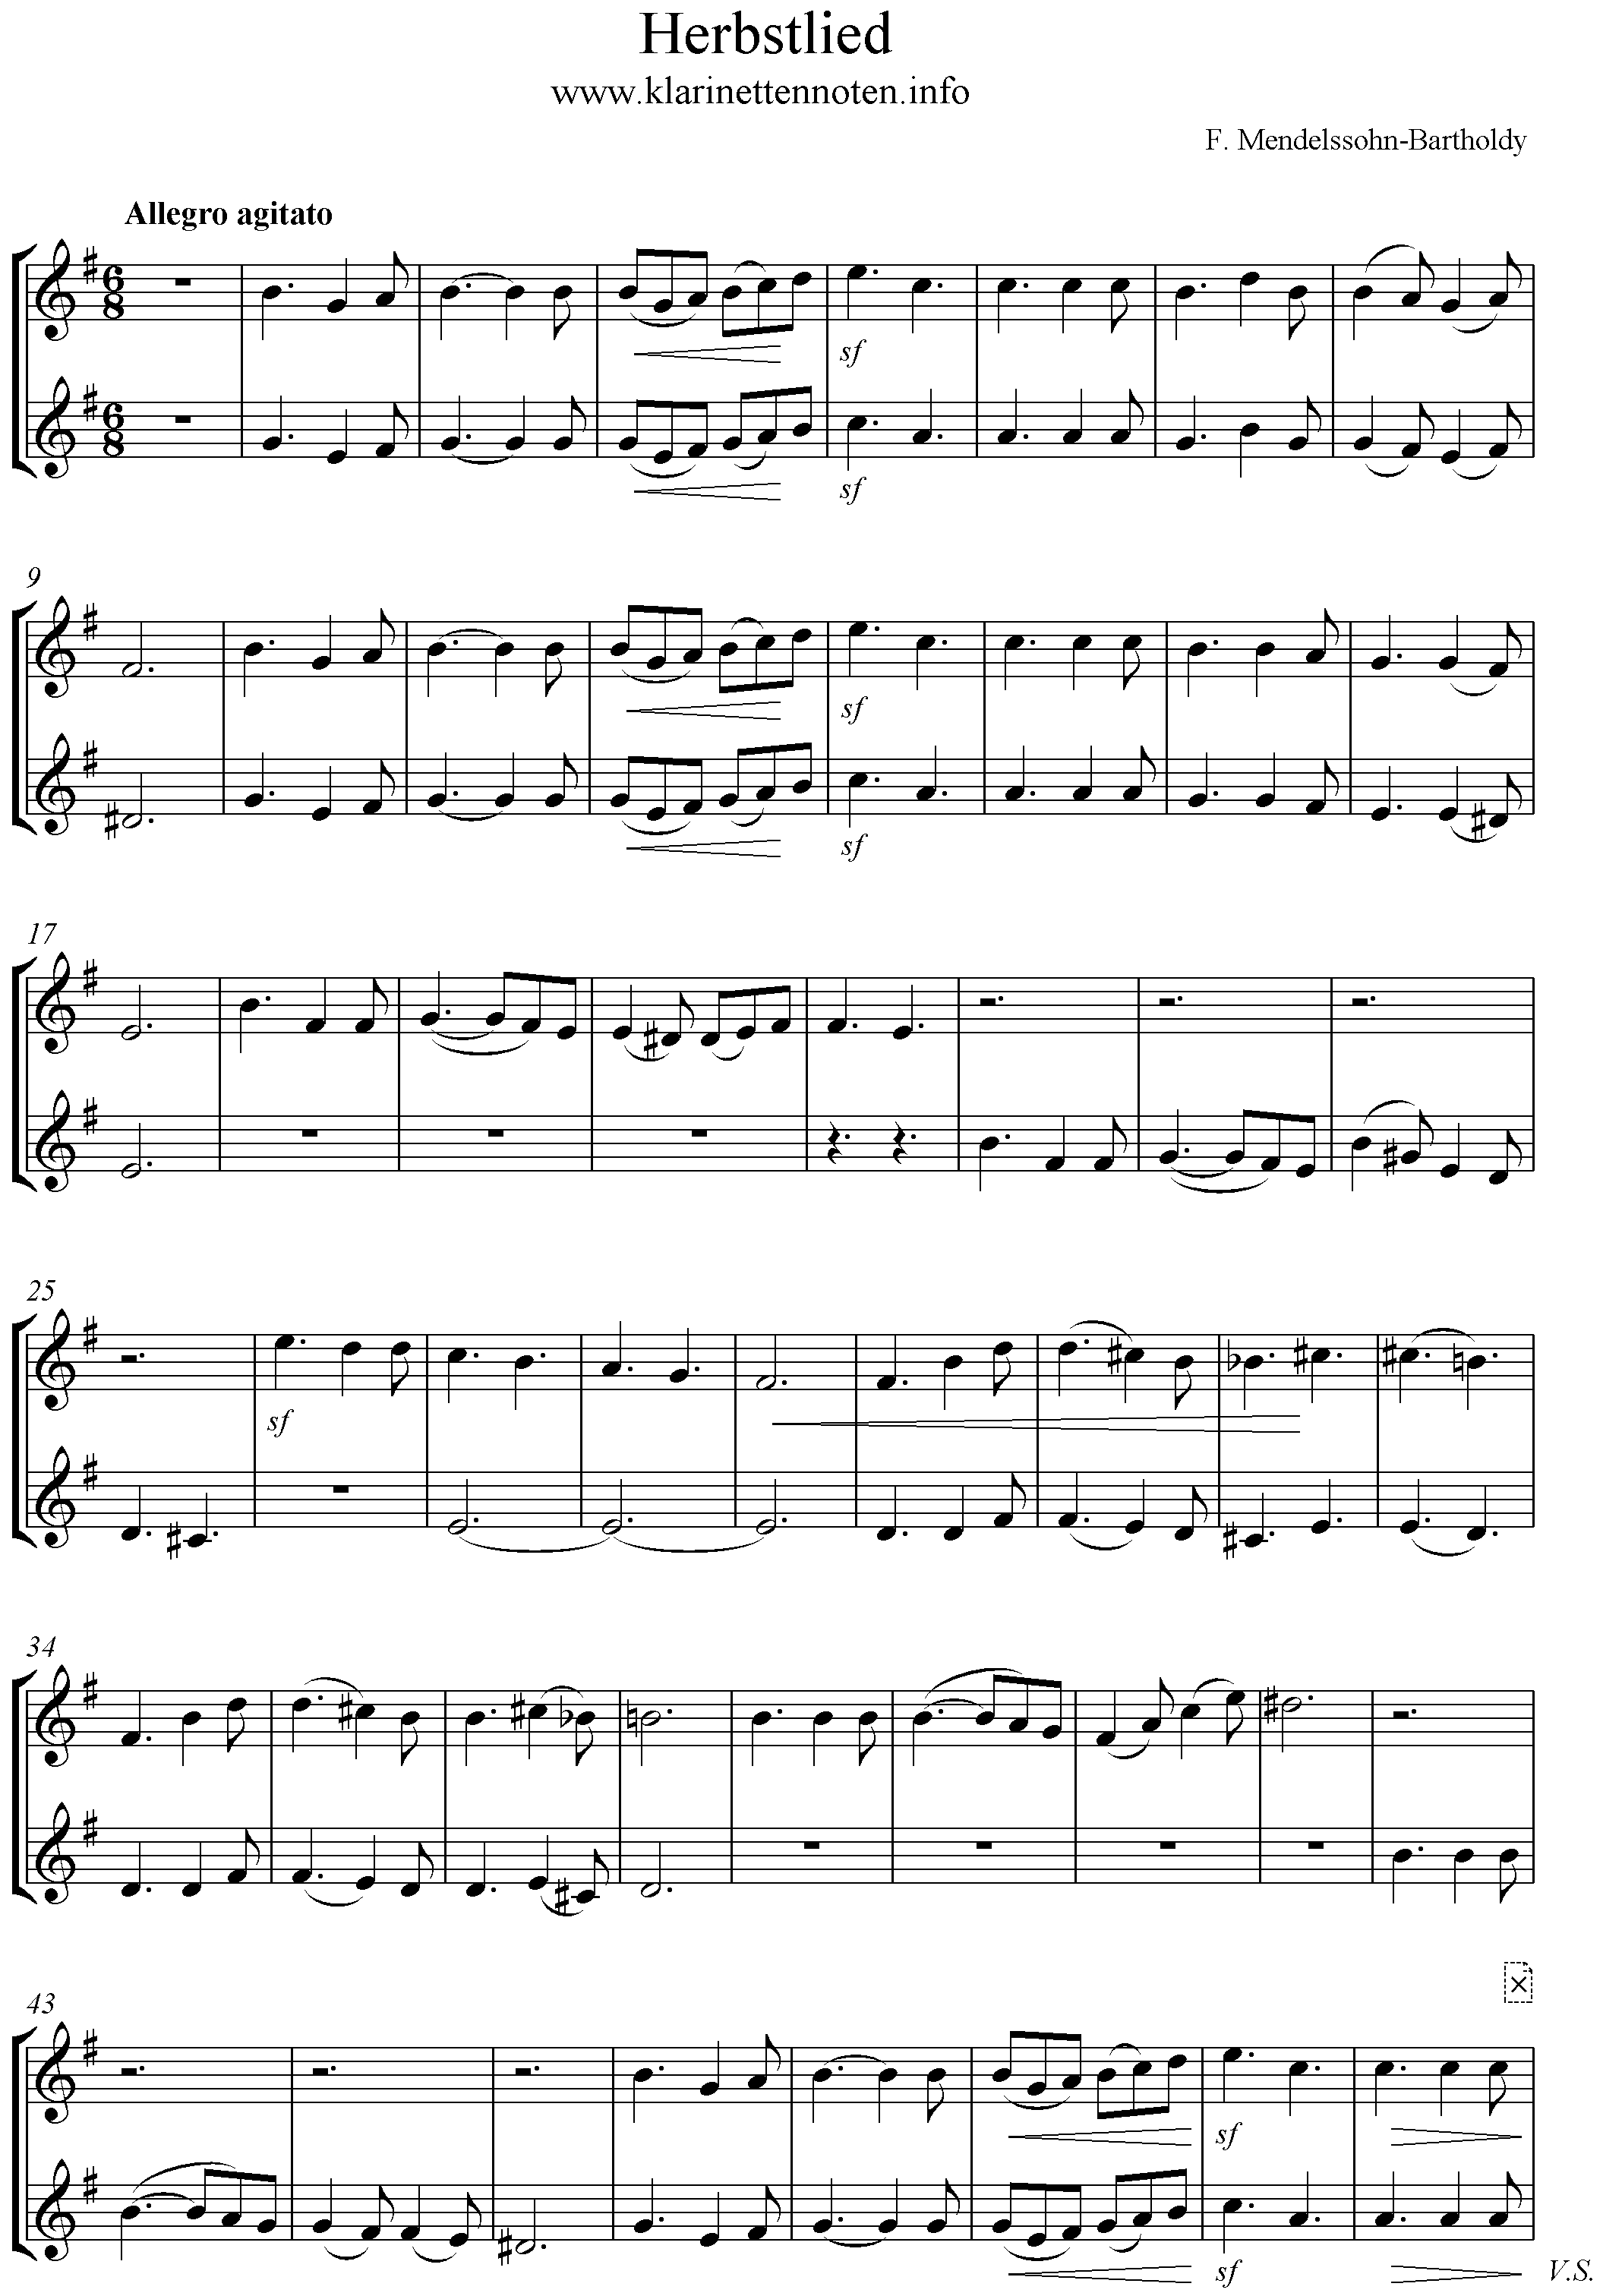 Herbstlied, op.63/4, Mendelssohn, G-Dur